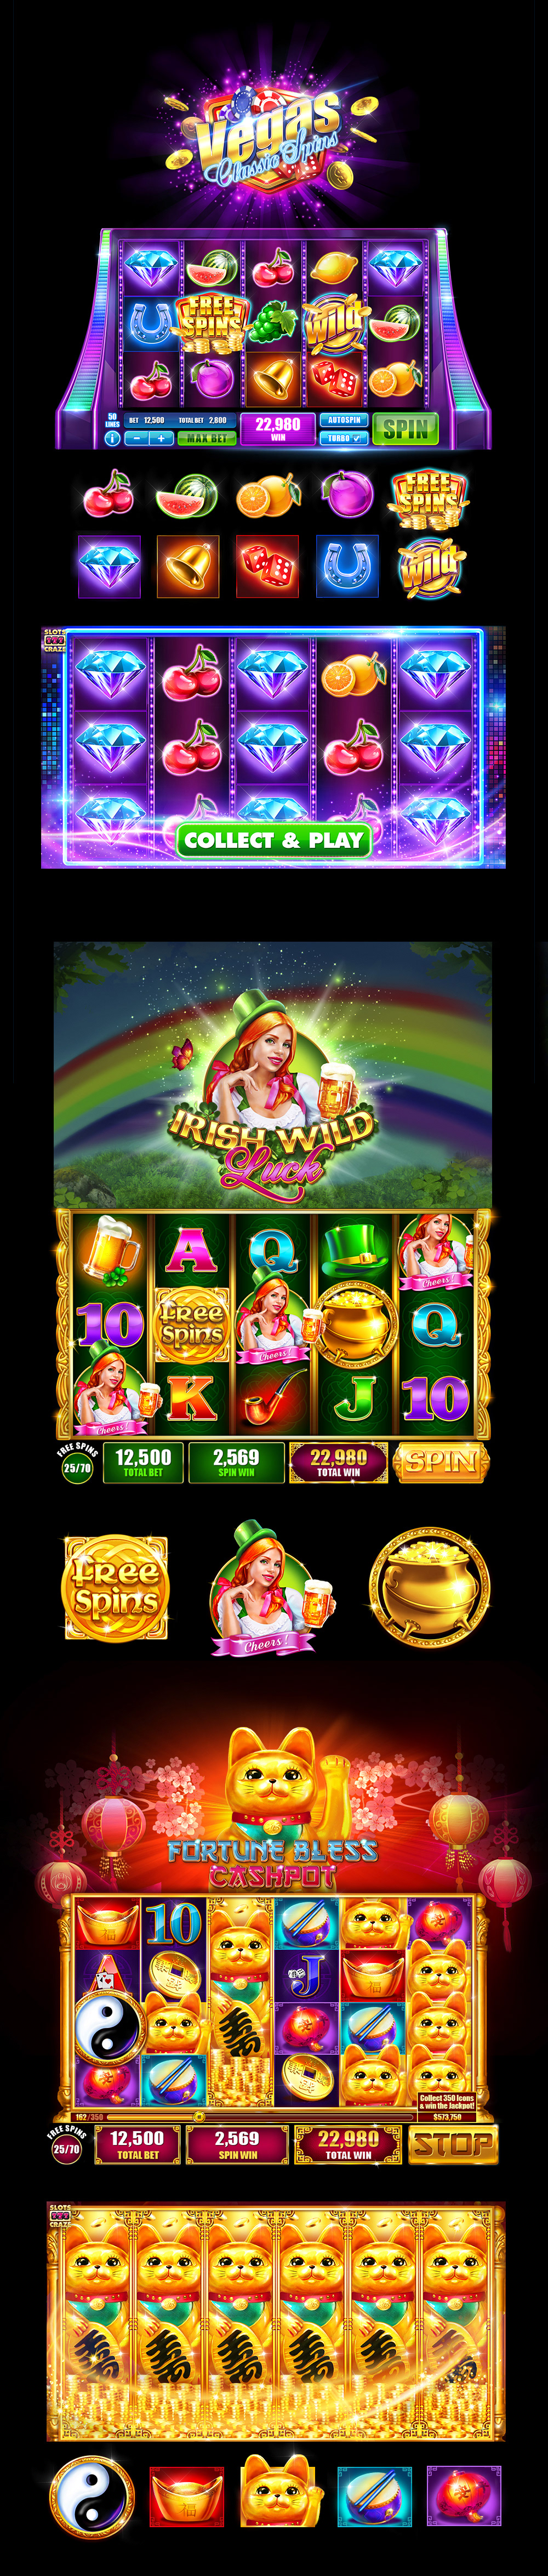 slot casino design slotmashine reels Icon Vegas spin socialgame game